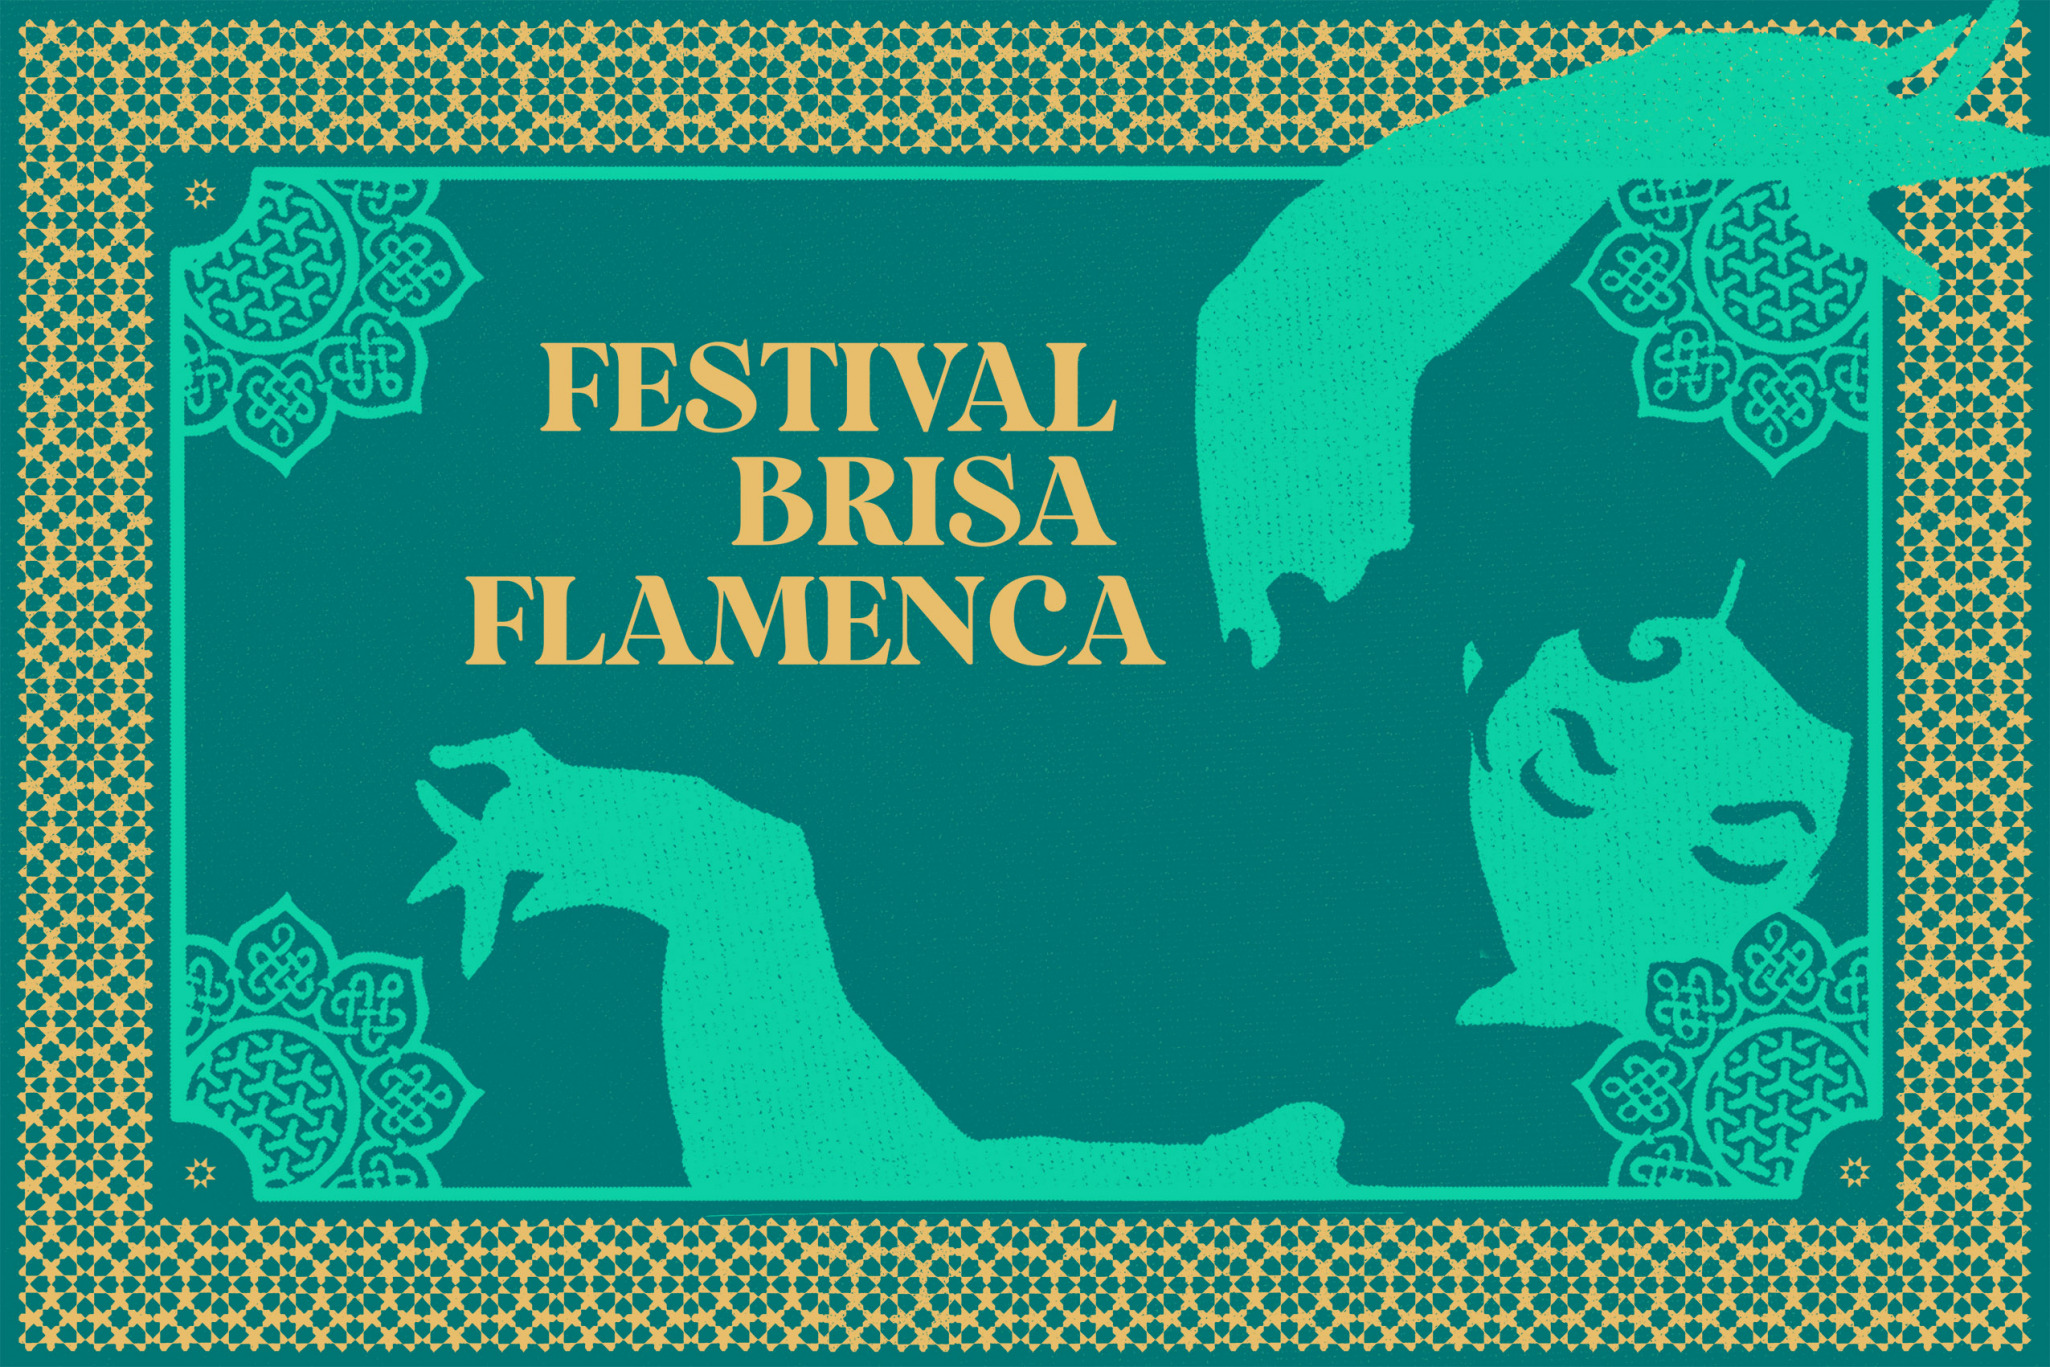 festival brisa flamenca 2022 16510818932343056